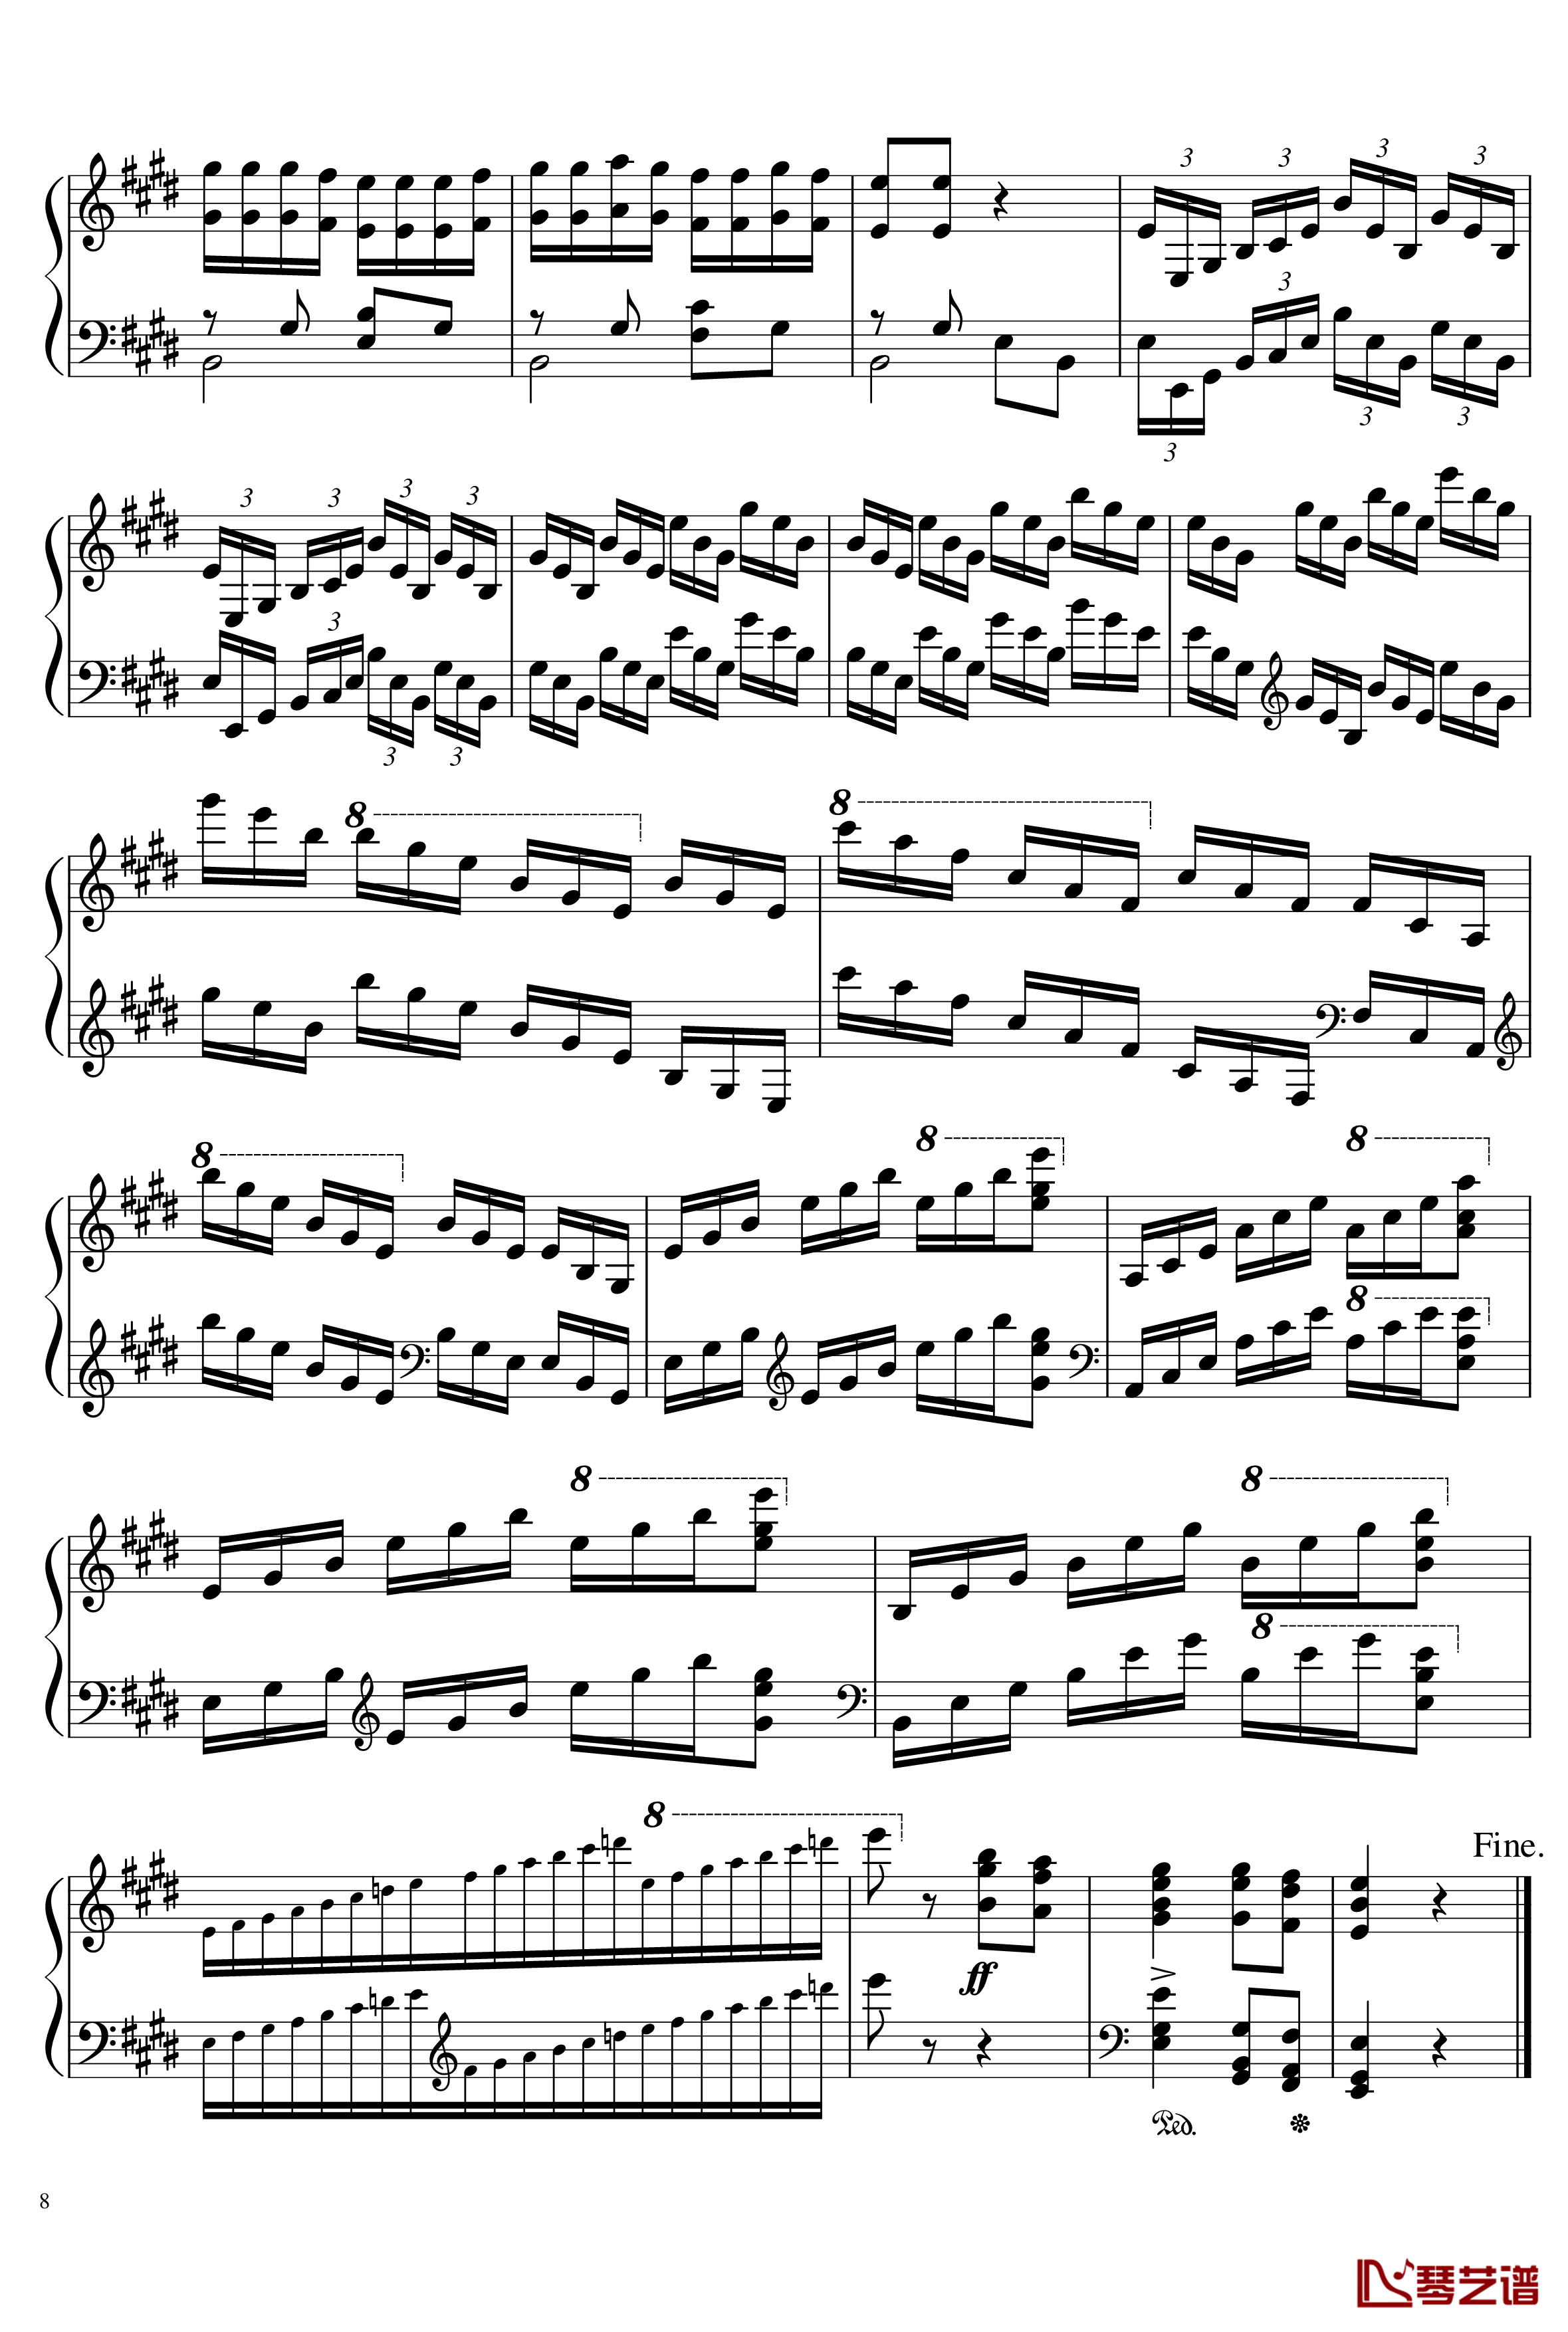 帕格尼尼主题变奏曲钢琴谱-Ice-KUN